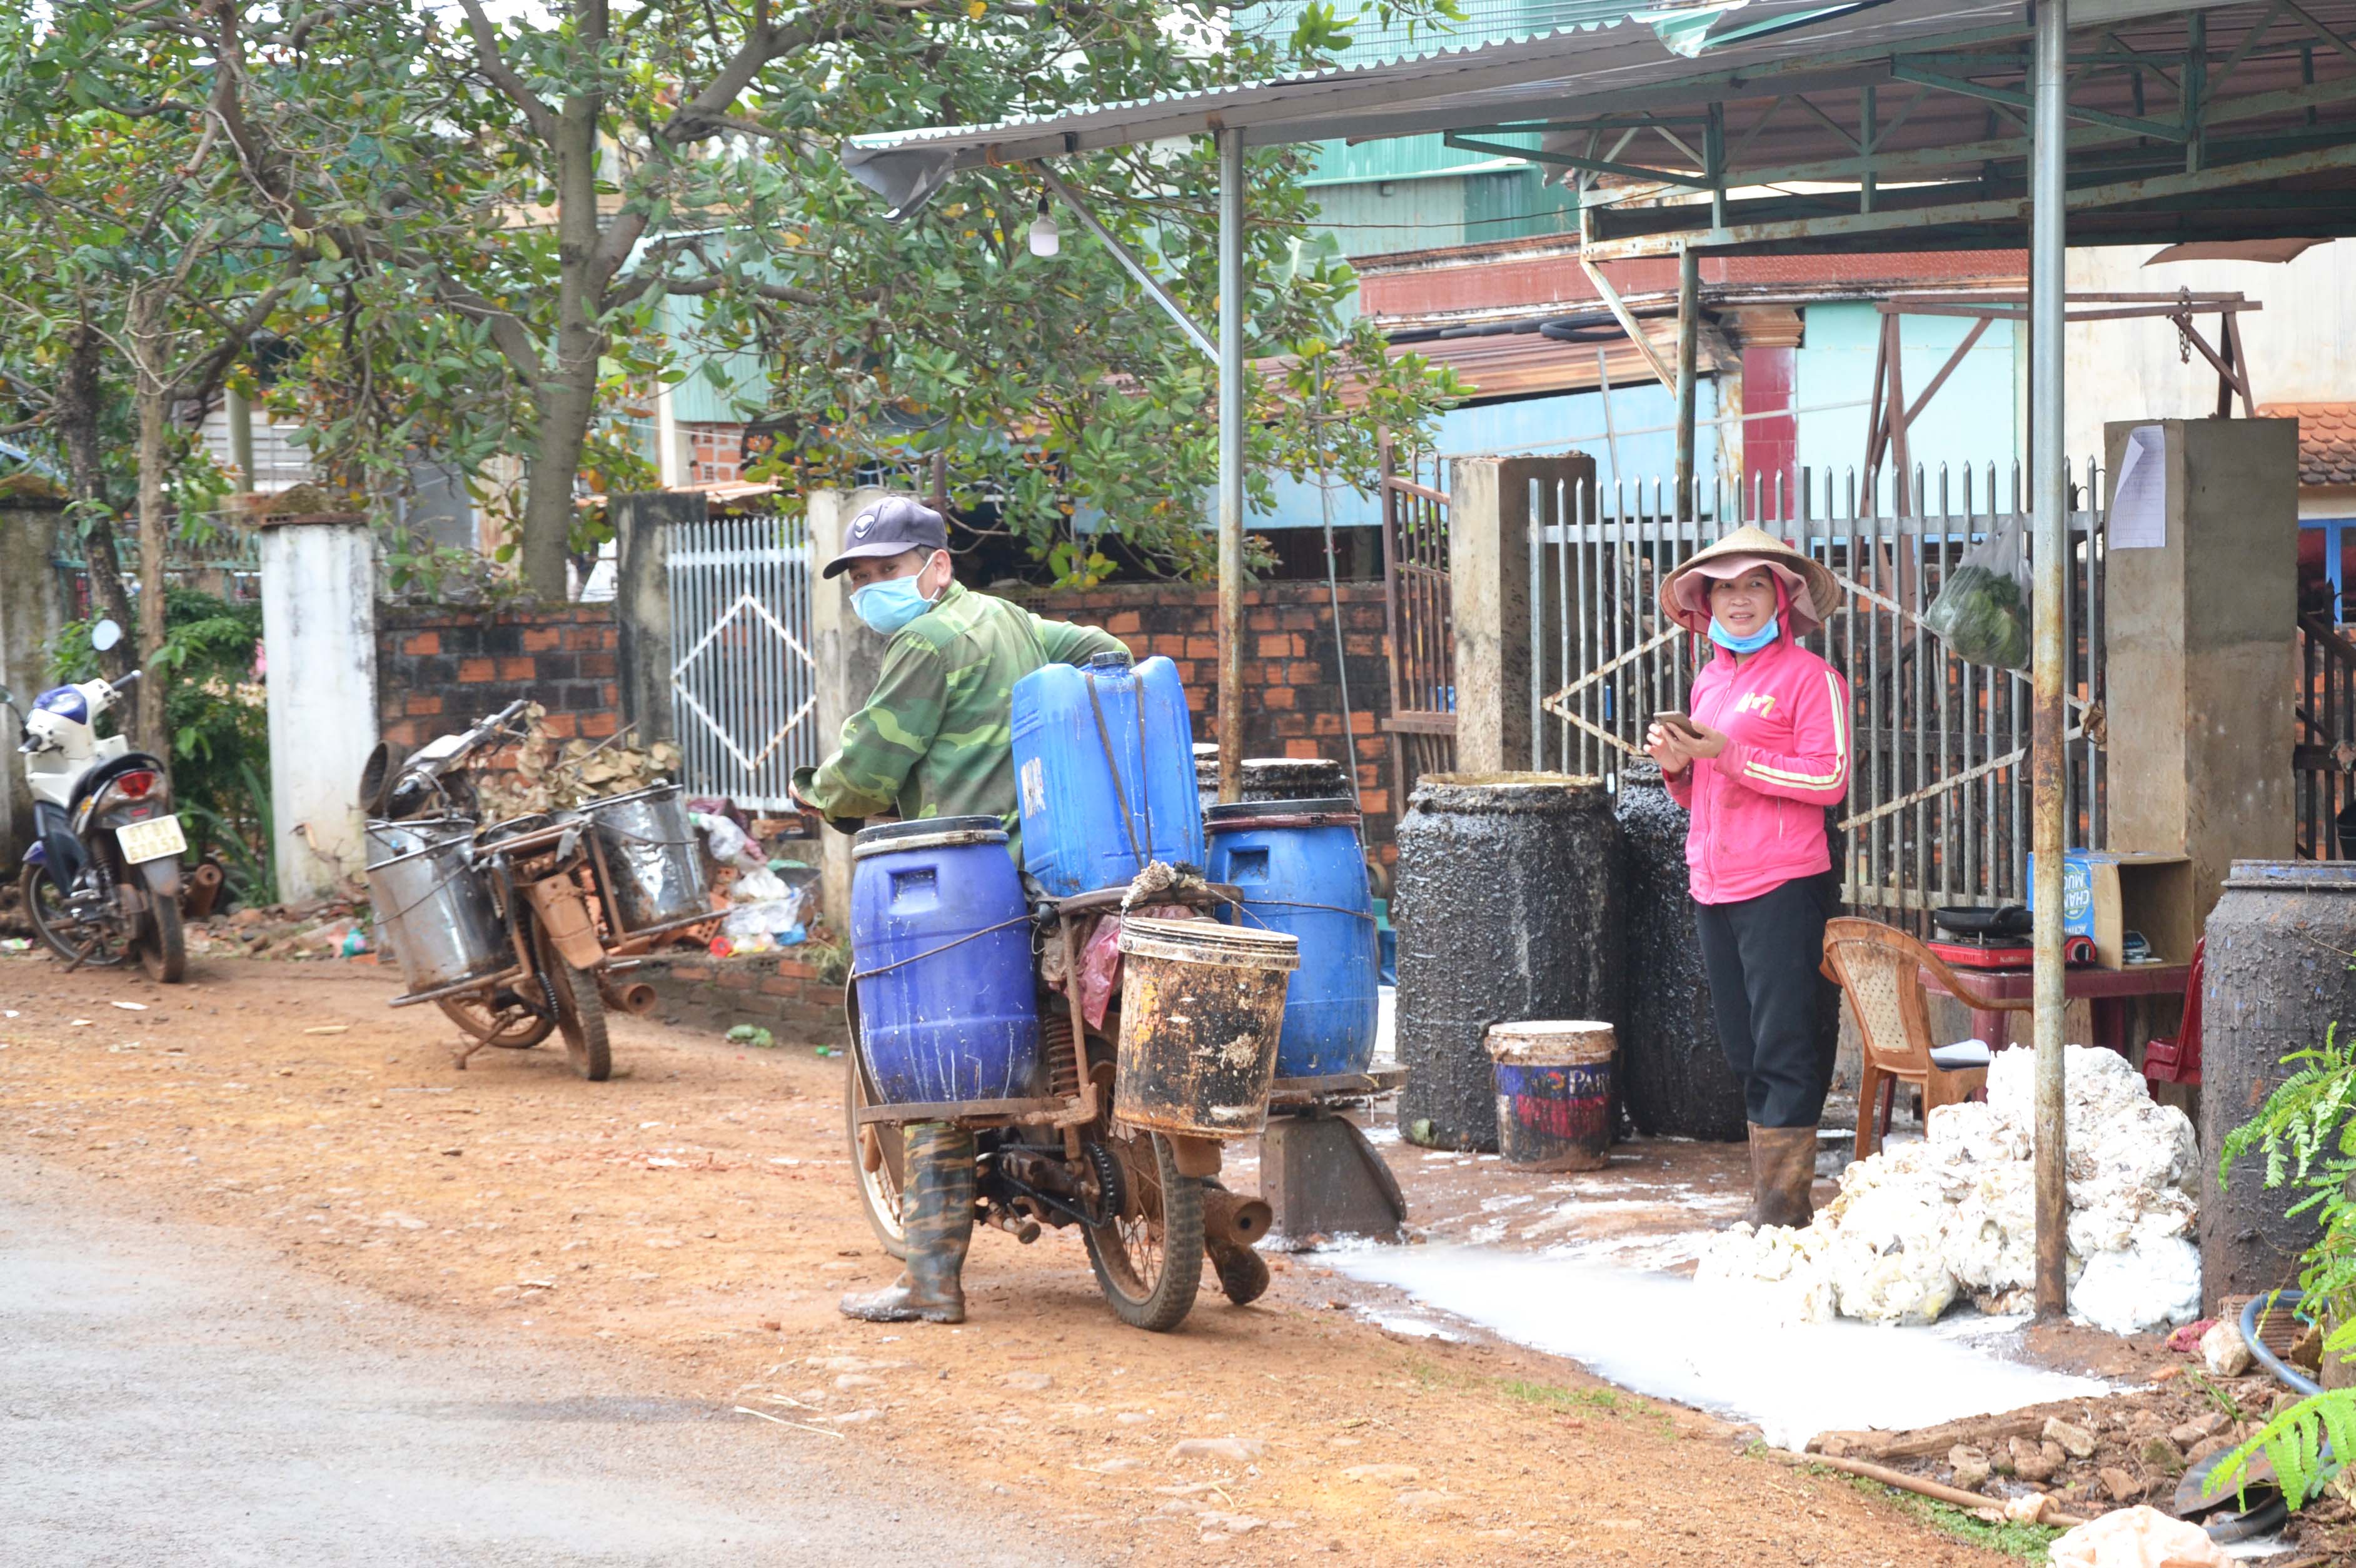 Mua bán mủ cao su tại nhà ông Nguyễn Văn May (làng Bang, xã Ia Chía). Ảnh: Hoàng Cư